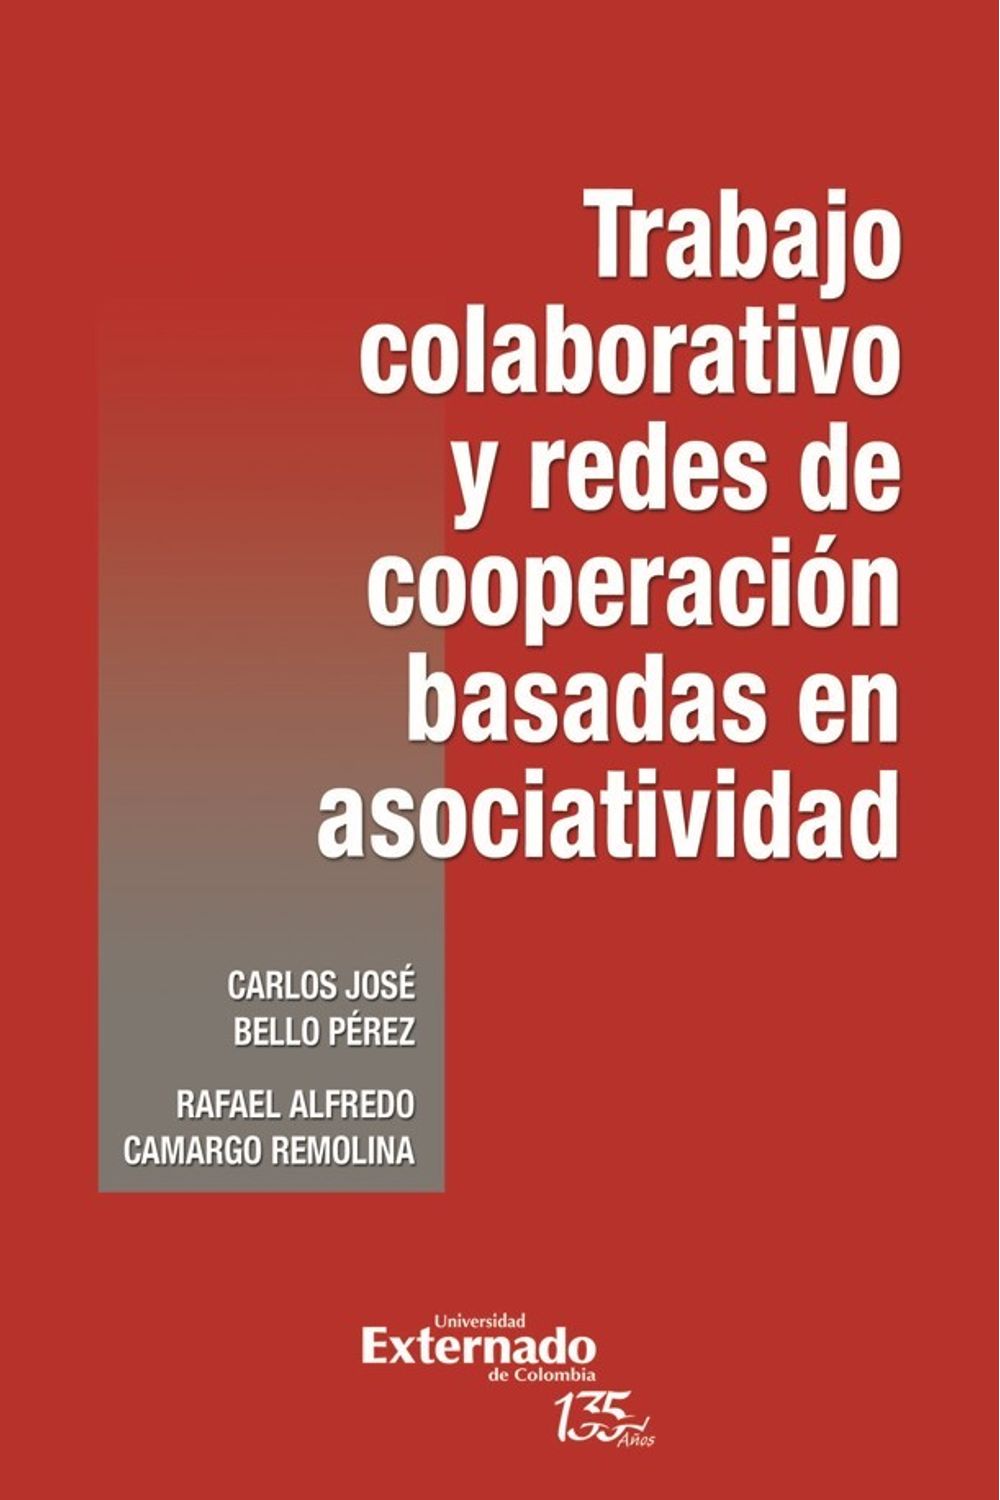 trabajo-colaborativo-y-redes-de-cooperacion-basadas-en-asociatividad-9789587906608-uext